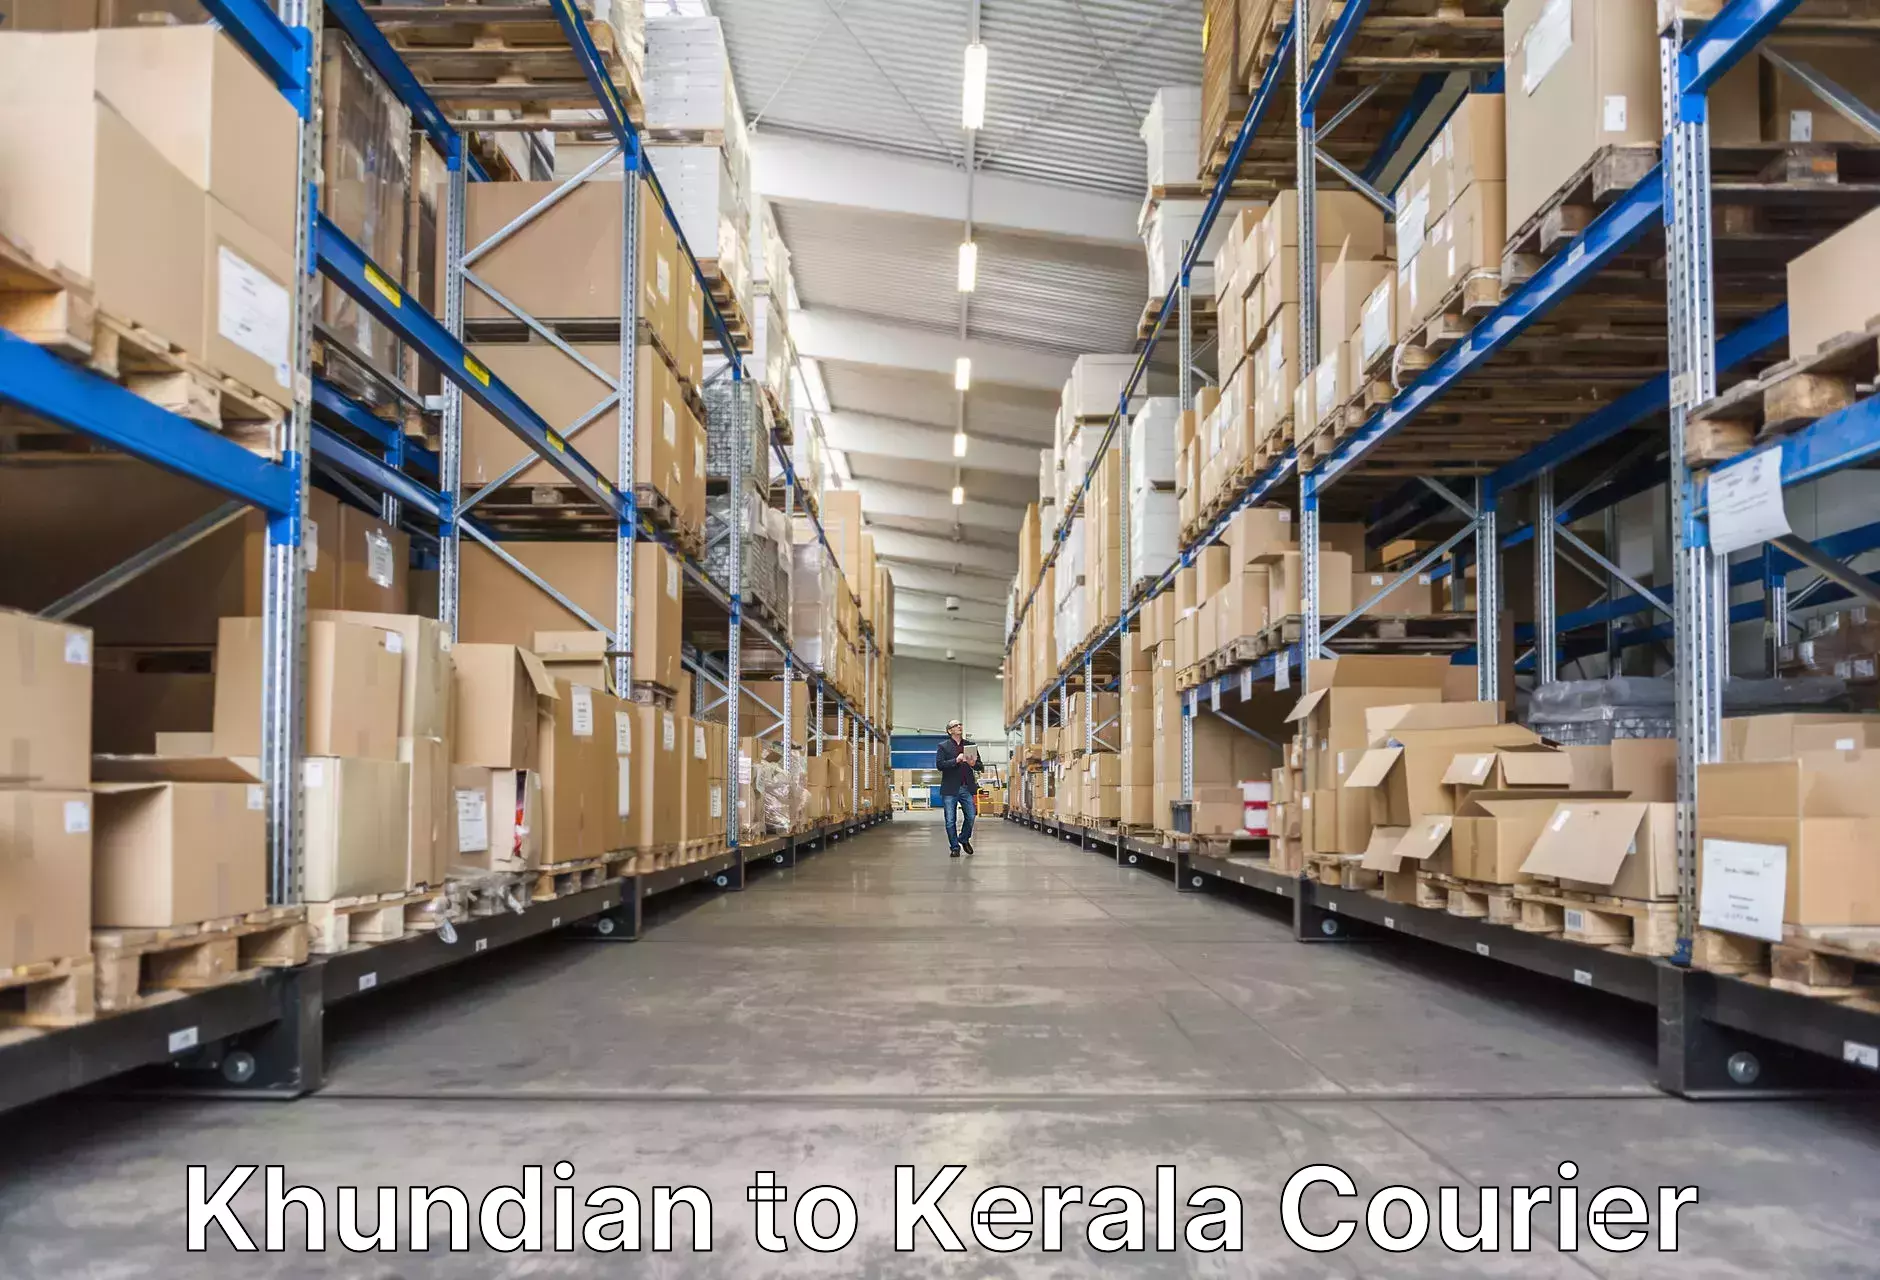 Luggage transport operations Khundian to Kerala